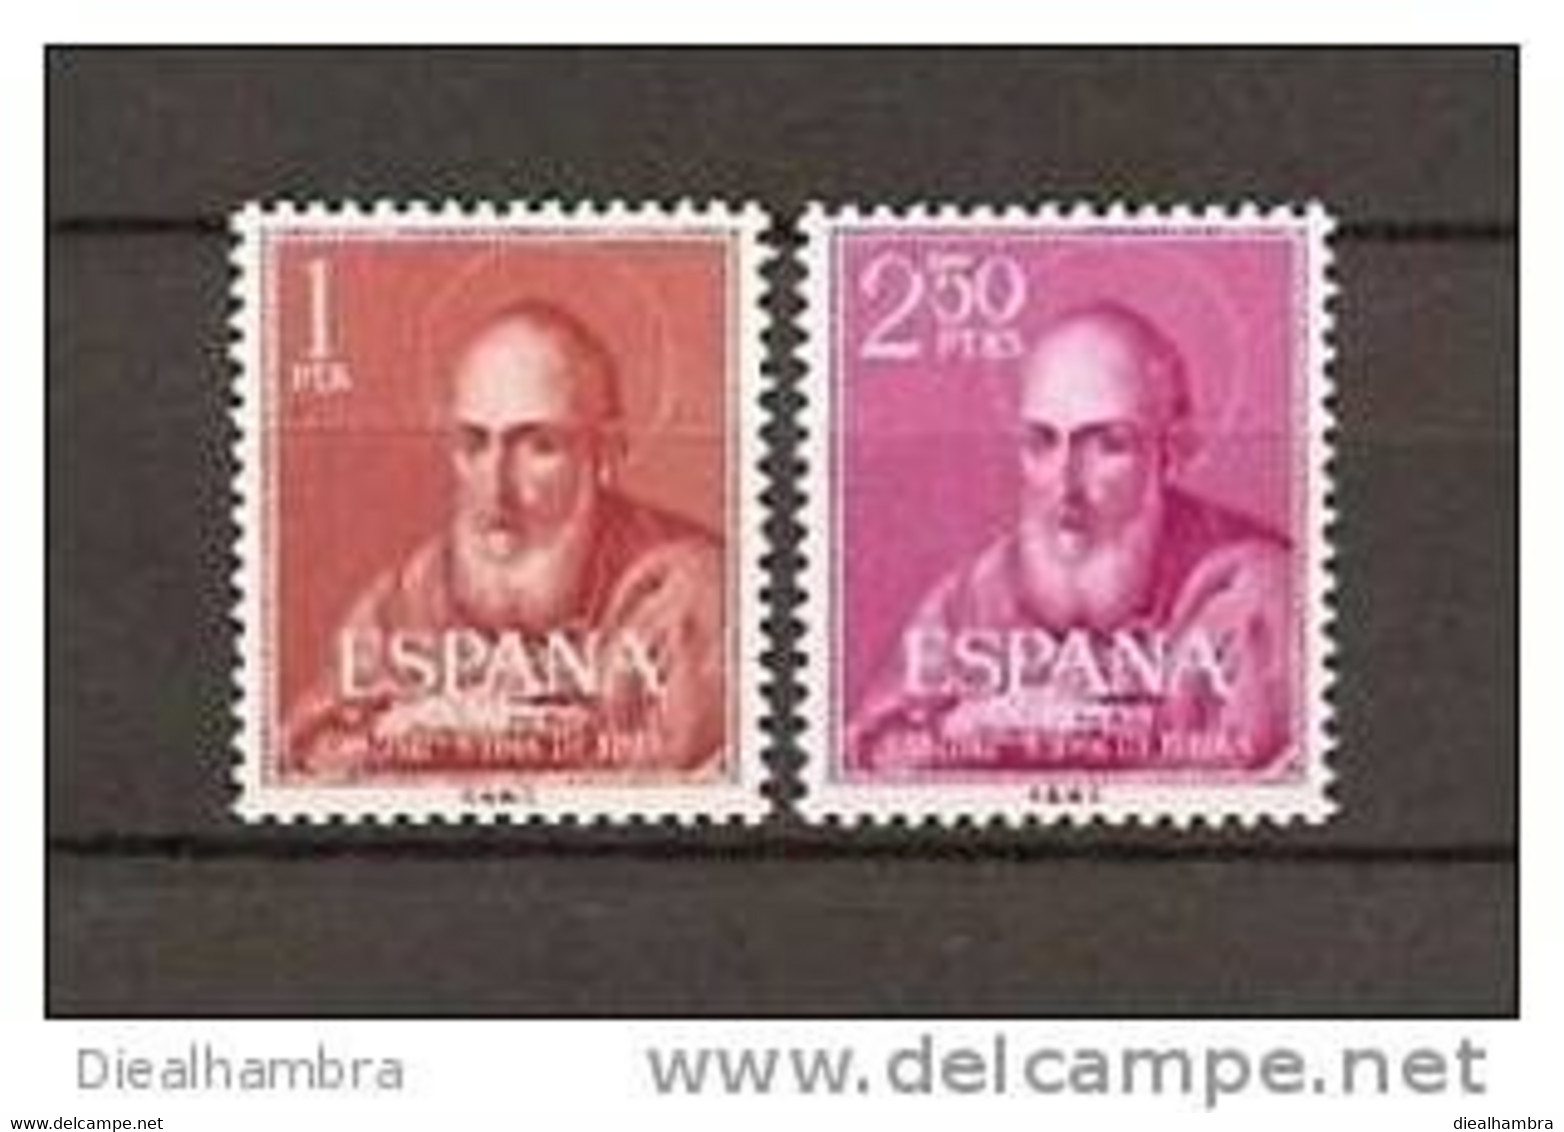 SPAIN ESPAÑA SPANIEN CANONIZACIÓN DEL BEATO JUAN DE RIBERA 1960 / MNH / 1292 - 1293 - Neufs